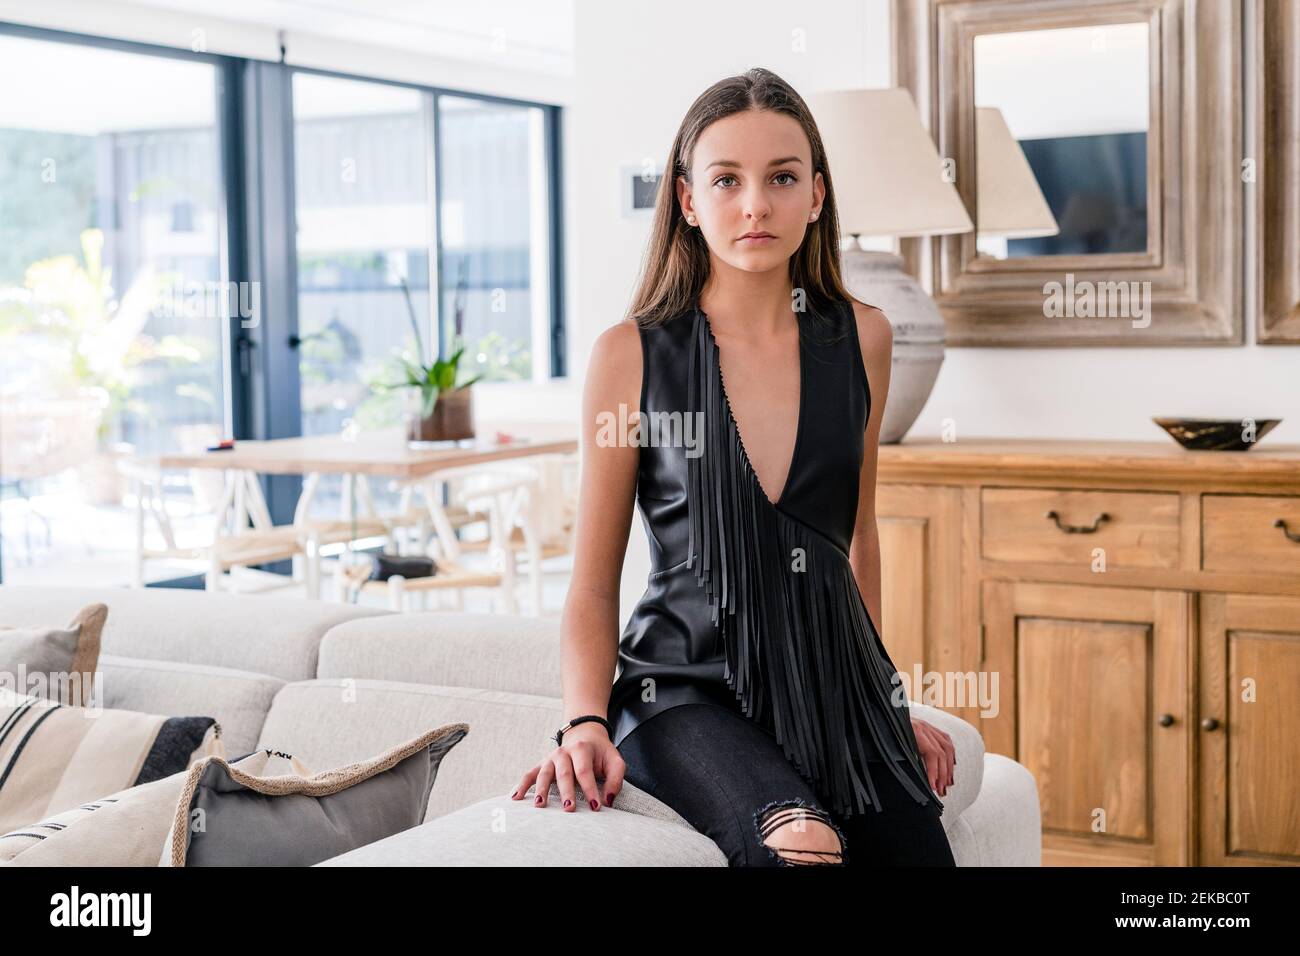 Ragazza adolescente sicura ed elegante che indossa la parte superiore nera seduta sul divano in soggiorno Foto Stock